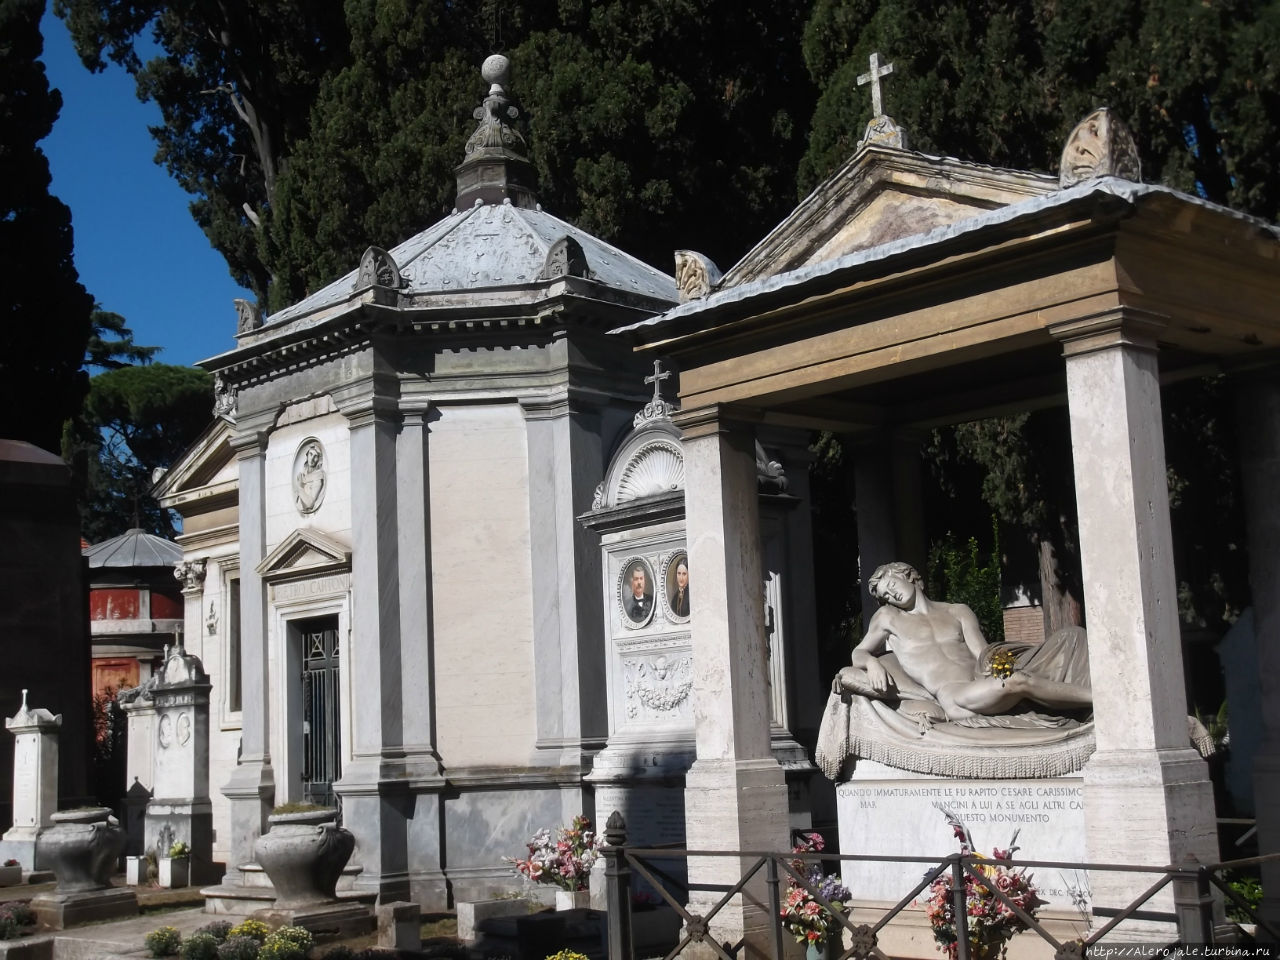 Солнечный день, а мы идем на кладбище Рим, Италия